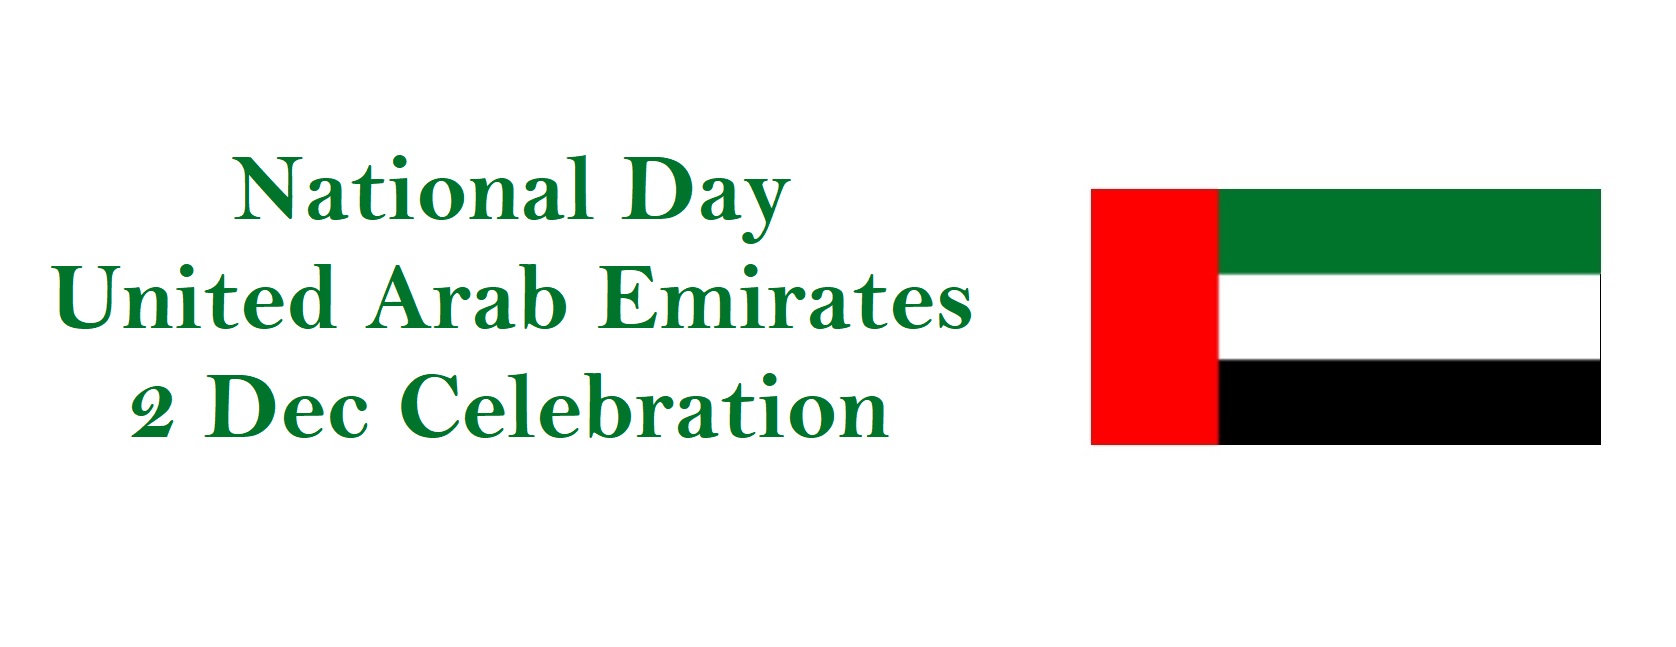 National Day Holiday, UAE